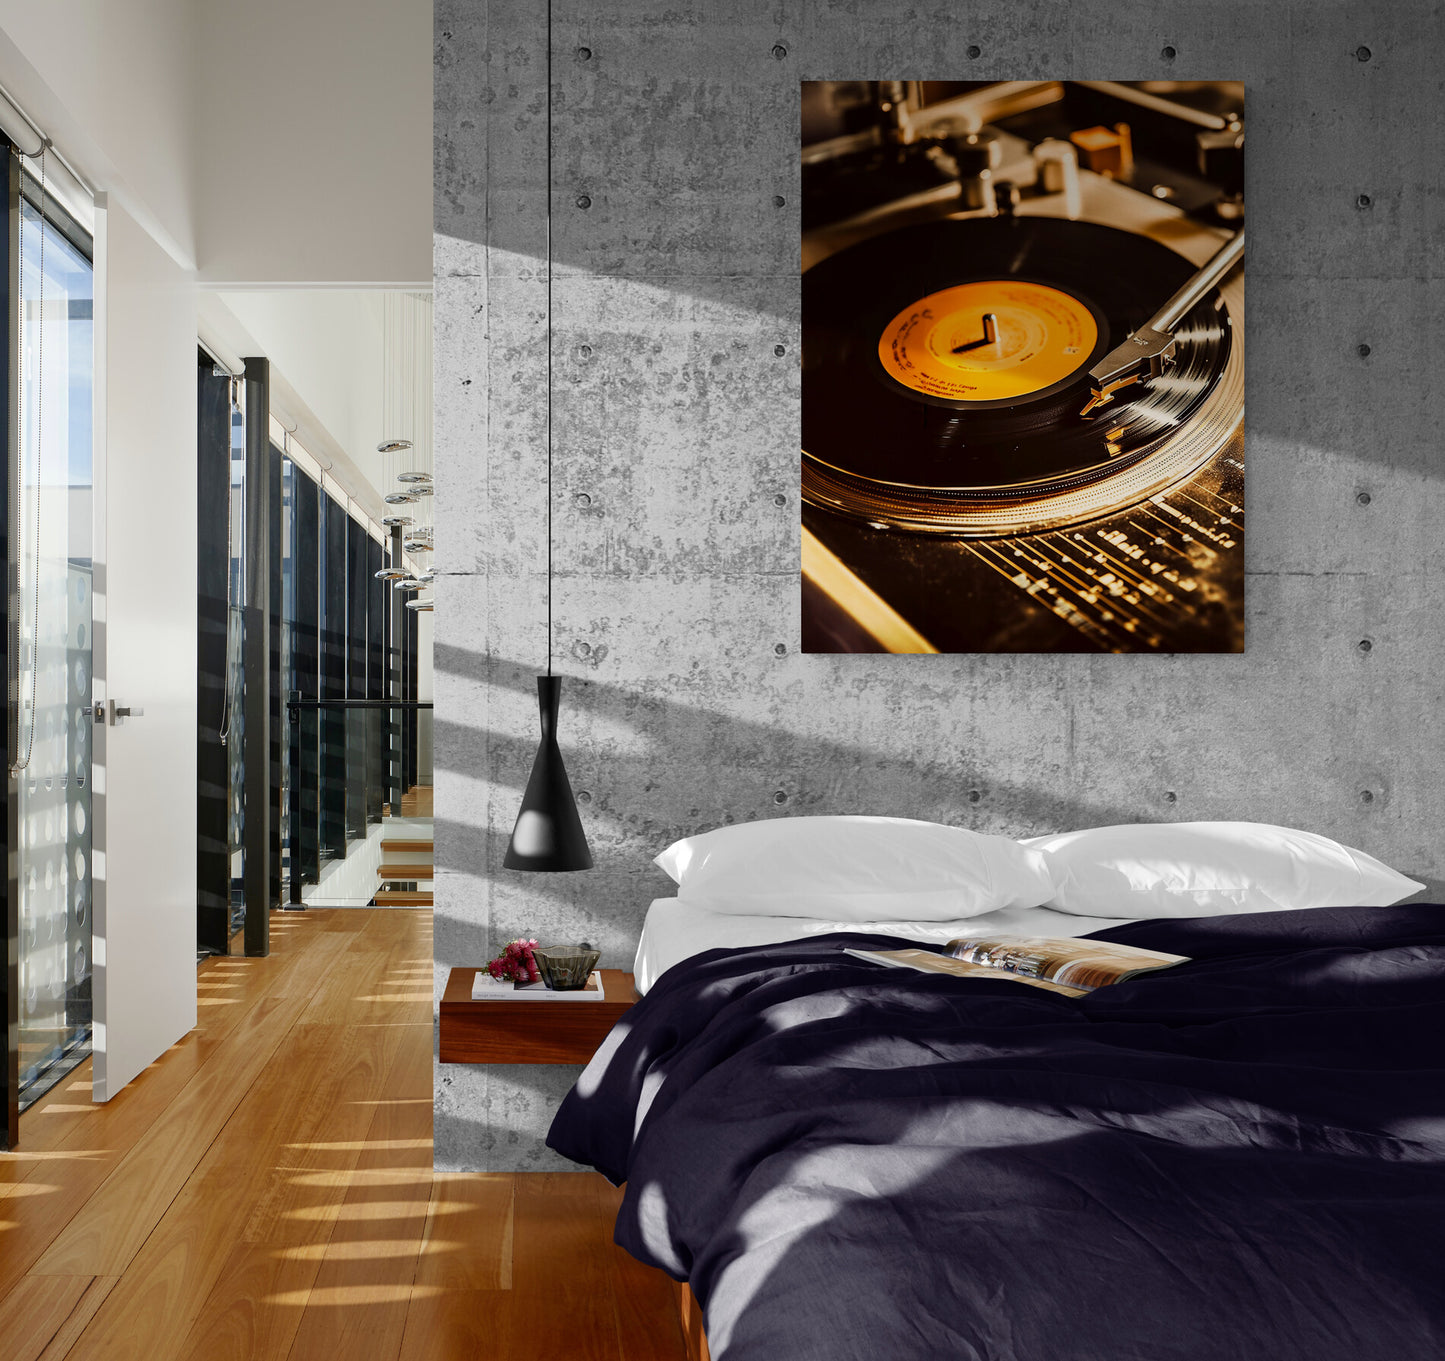 Tableau vinyl rétro suspendu dans une chambre adulte à l'ambiance industrielle de style loft.